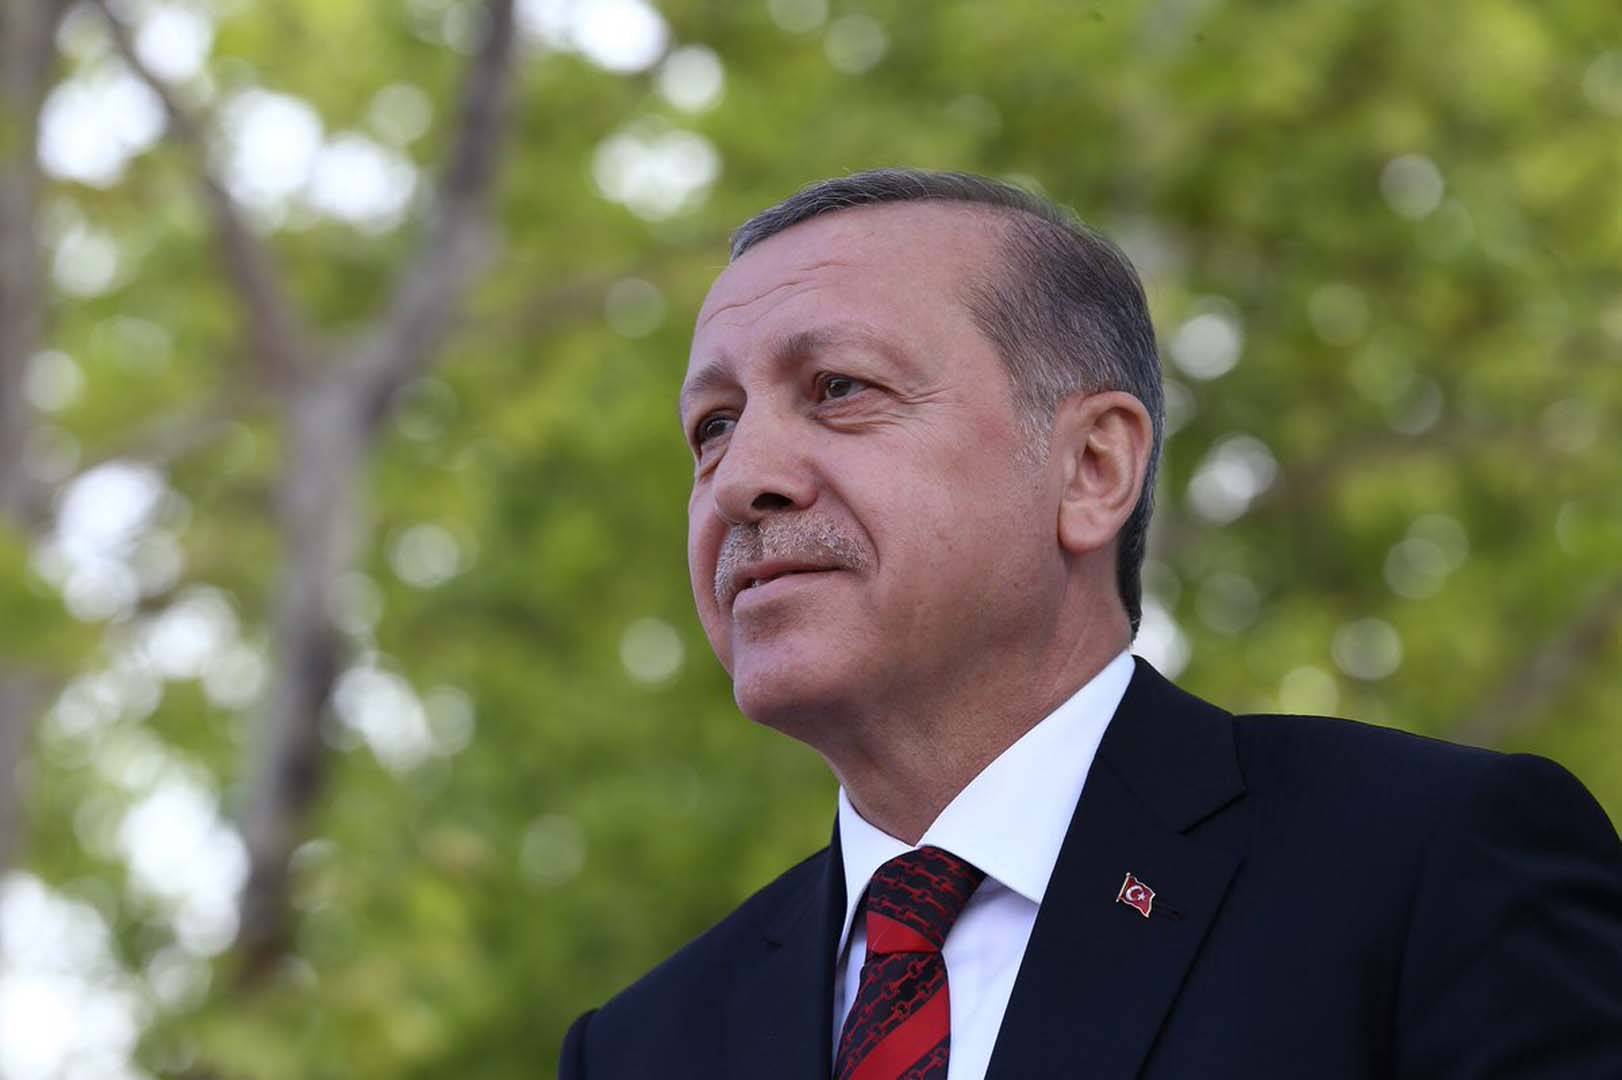 Cumhurbaşkanı Yardımcısı Fuat Oktay: Hiçbirinin kendisine güveni olmadığı için Recep Tayyip Erdoğan'ın karşısına çıkmaya çekiniyorlar